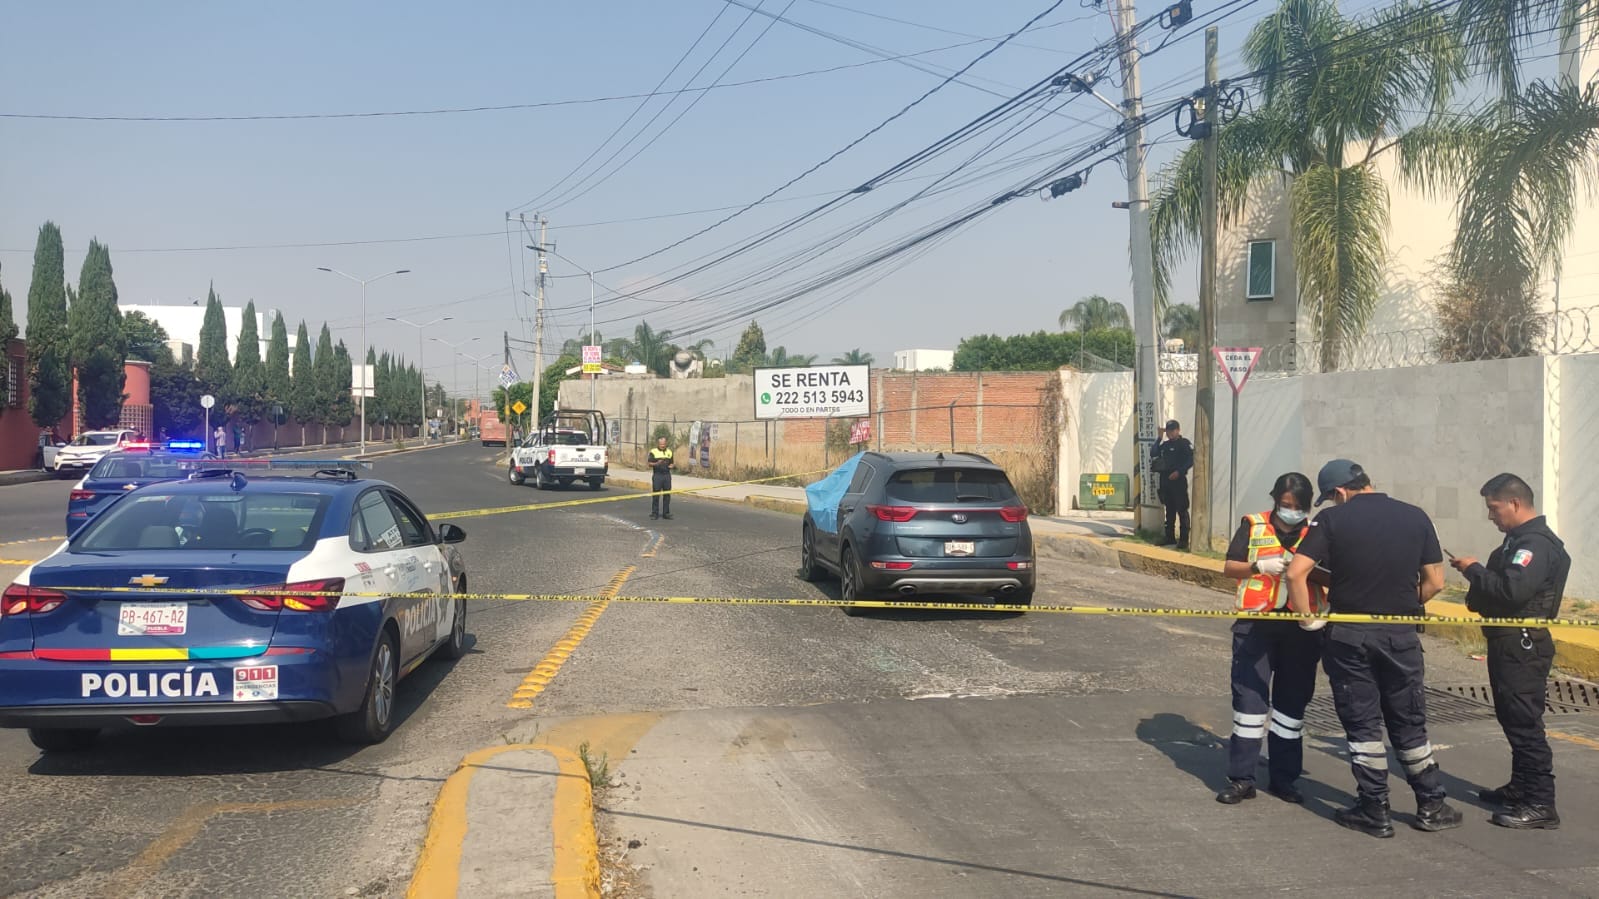 La Fiscalía de Puebla encaminará las pesquisas para dar con los responsables (Foto: Facebook/Secretaría de Seguridad Ciudadana Cholula)